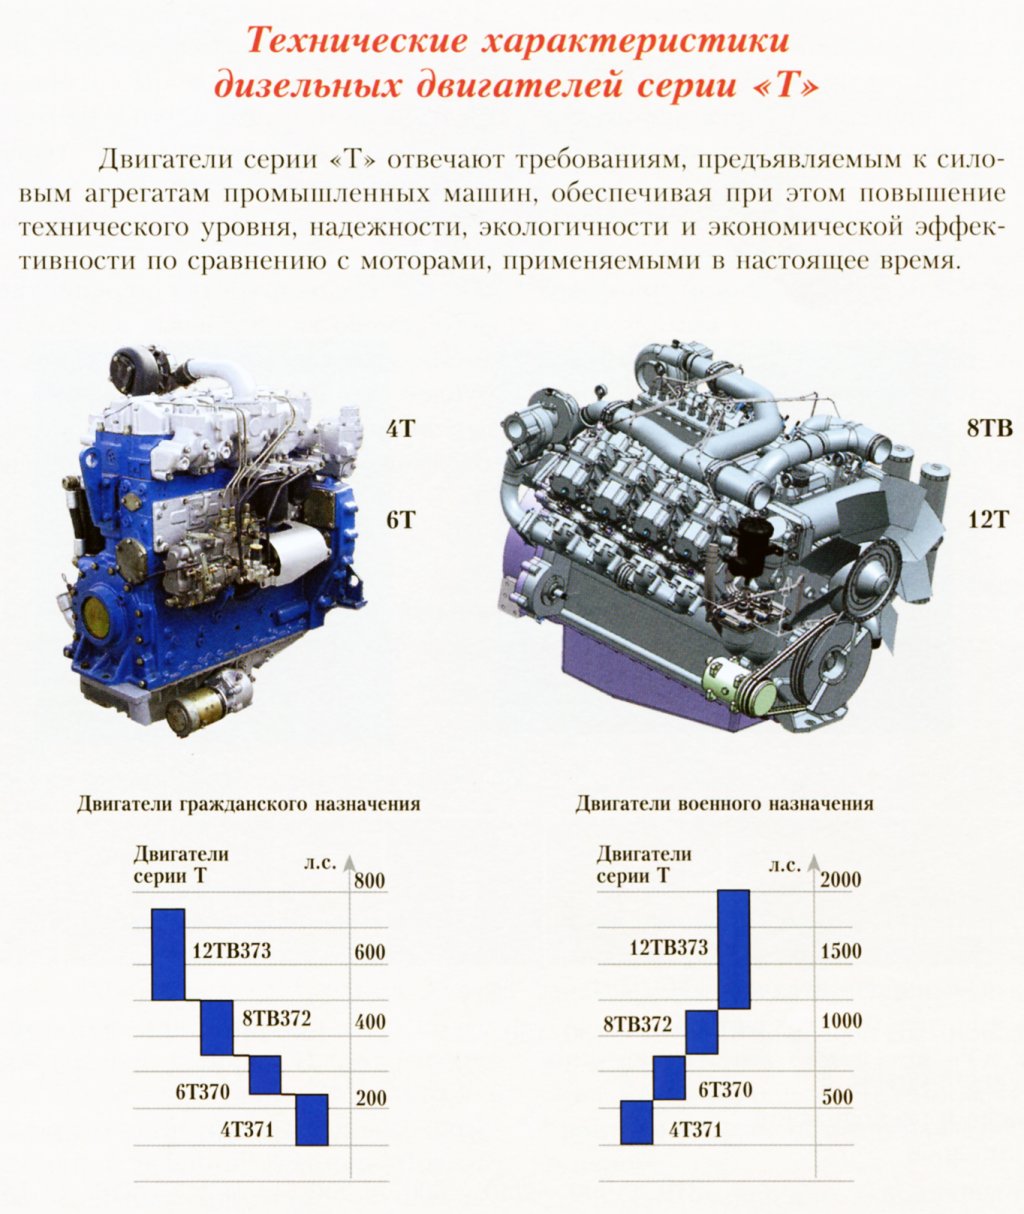 Назначение двигателя автомобиля. Технические характеристики дизельного двигателя. Применение дизельного двигателя. Дизель 12тв373ч. Назначение ДВС.